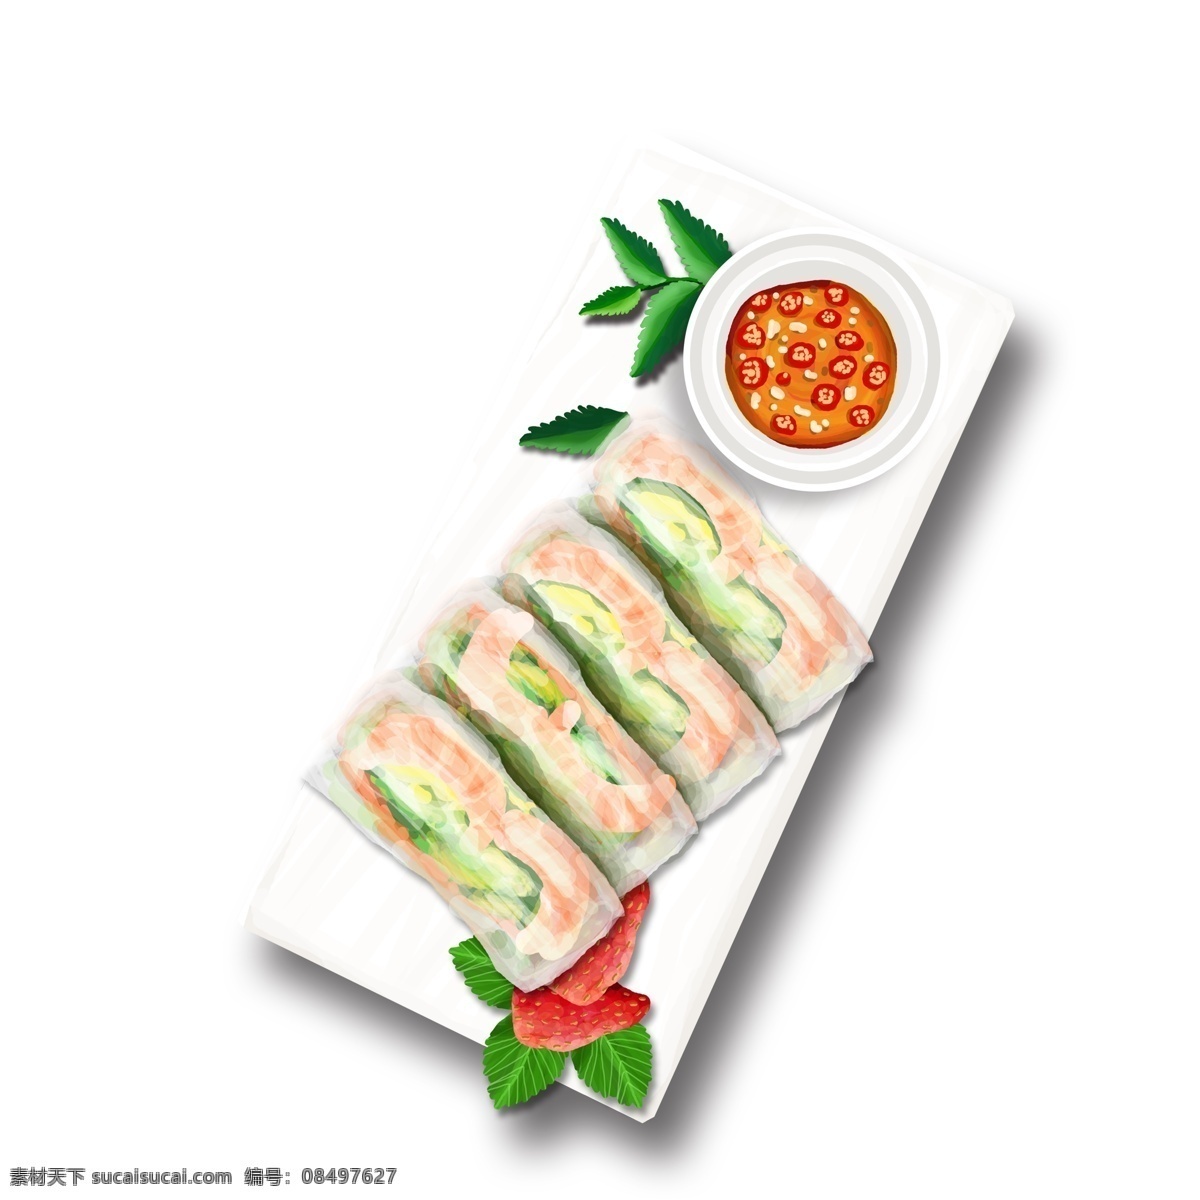 美味 寿司 图案 元素 美食 餐饮图案 辣椒 绿叶 草莓 元素装饰 装饰图案 创意元素 手绘元素 psd元素 生物静物